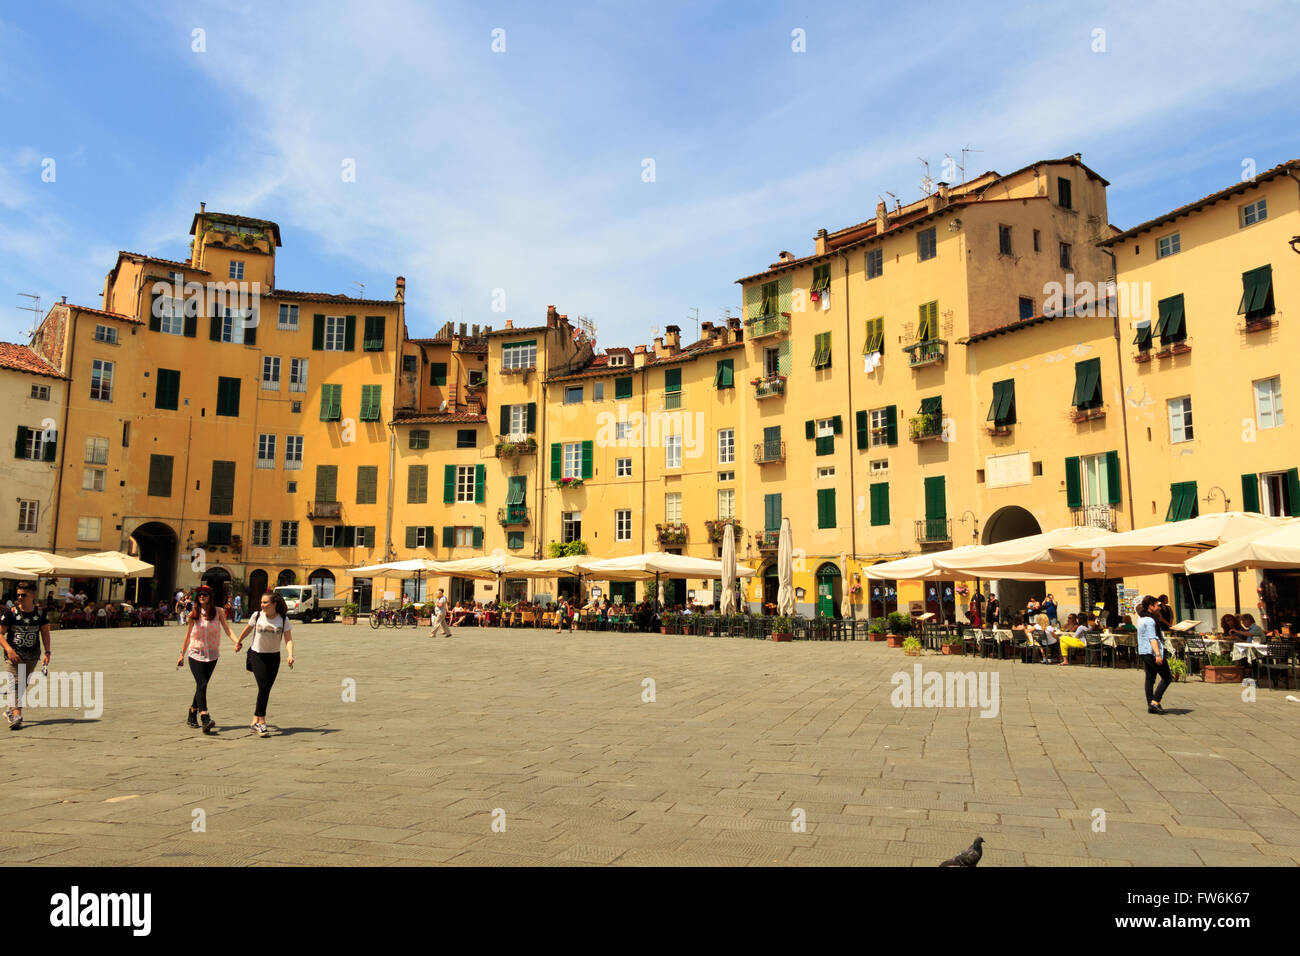 La célèbre ville Ovale Carré sur une journée ensoleillée à Lucca, Toscane, Italie Banque D'Images